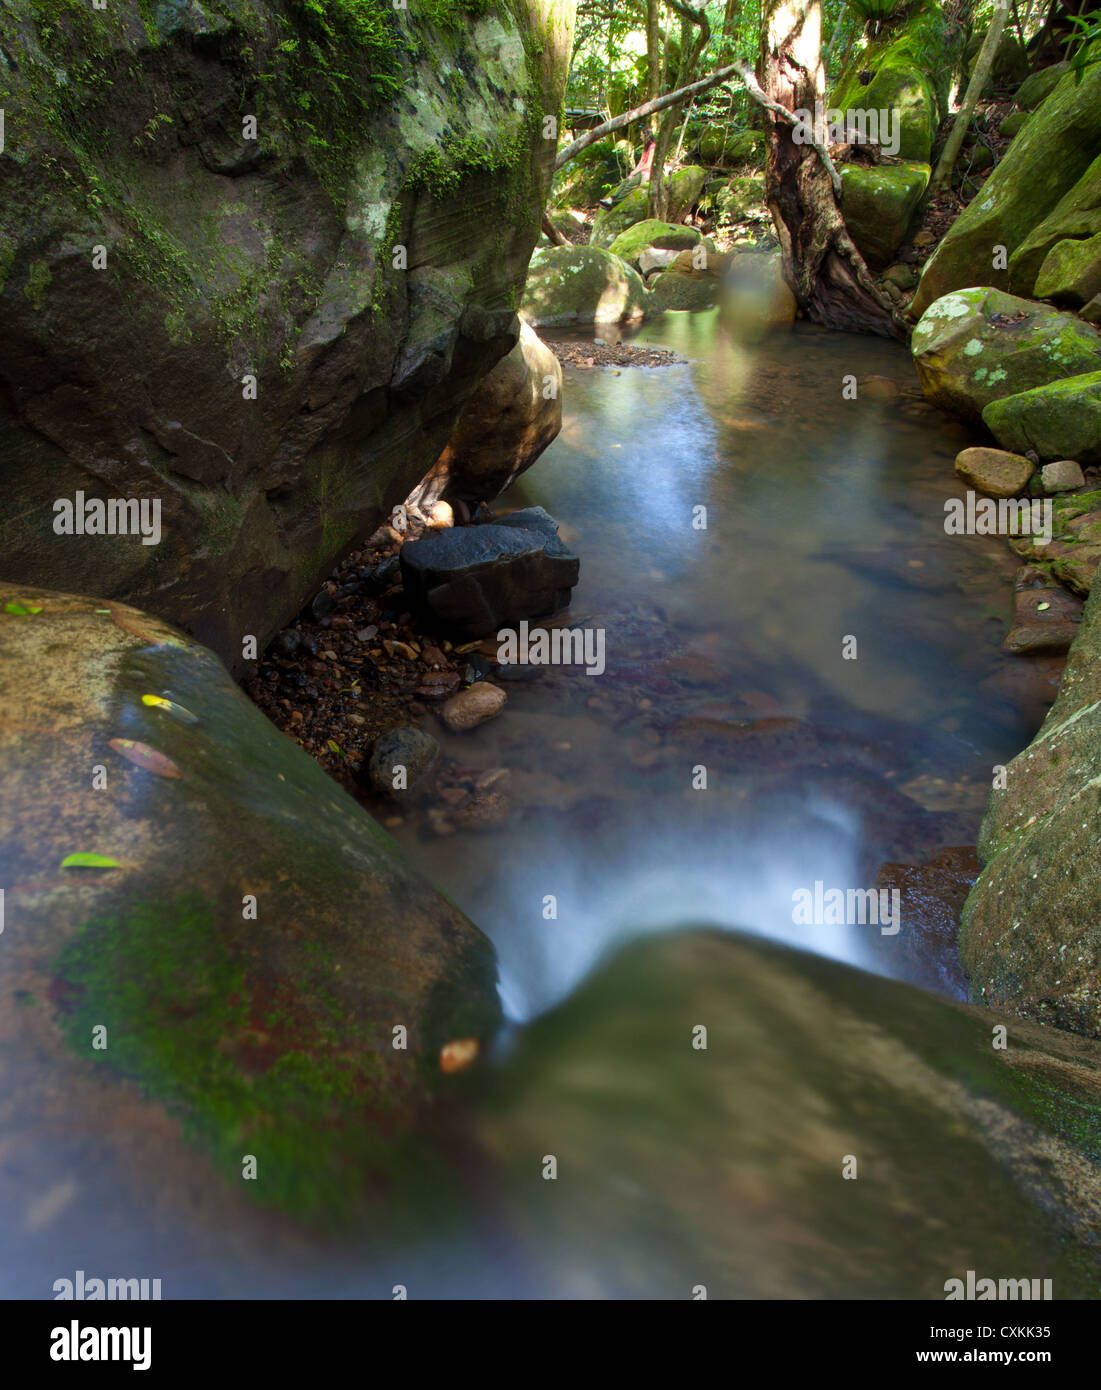 Petite chute dans un ruisseau, forêt tropicale, Budderroo Minnamurra Rainforest National Park, NSW, Australie Banque D'Images